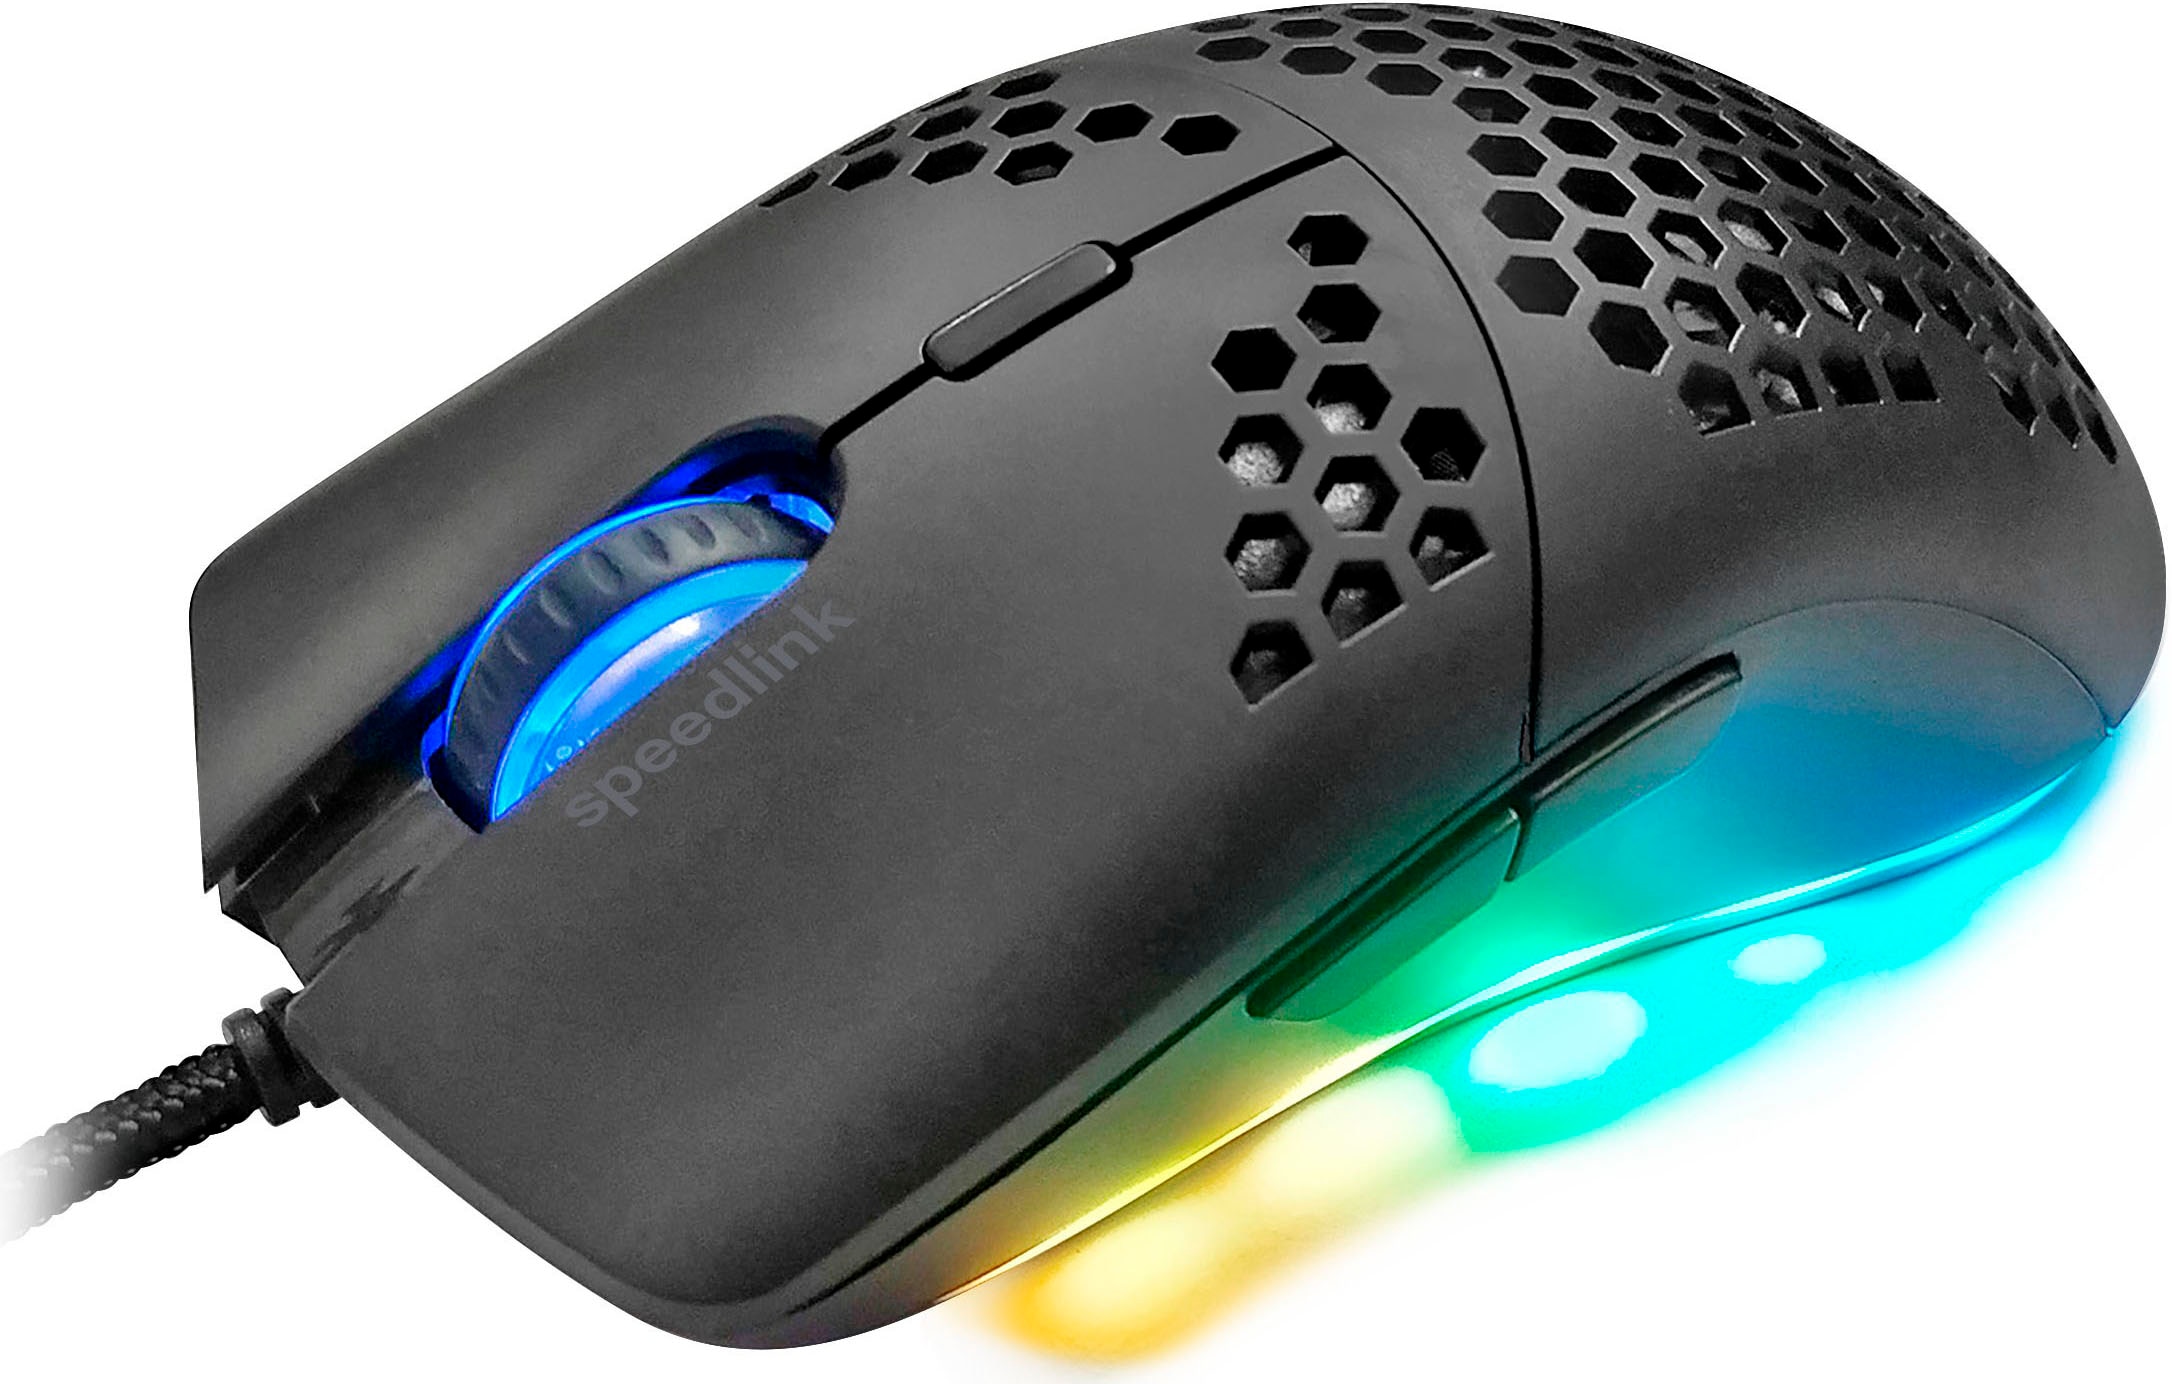 Speedlink Gaming-Maus »SKELL«, extrem leicht, beleuchtet